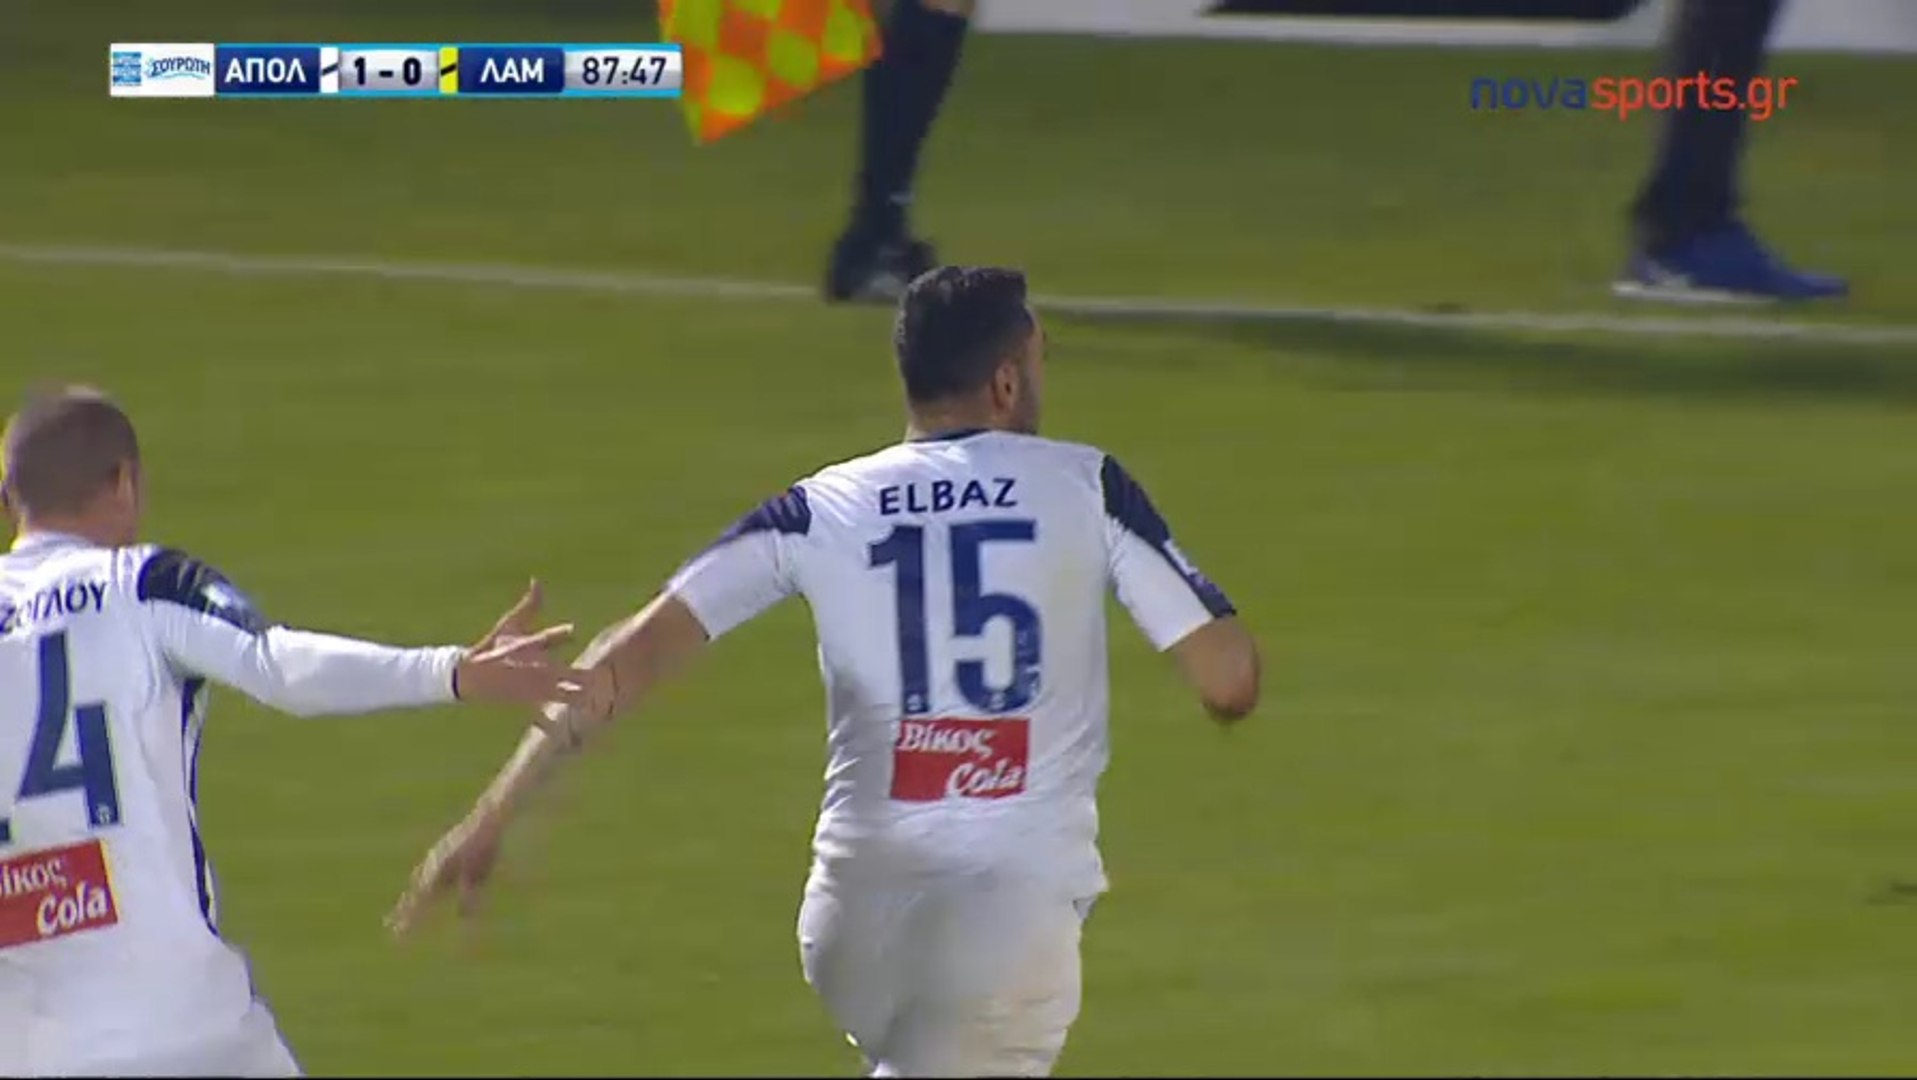 Eli Elbaz AMAZING Goal - Apollon Smyrnis 1 - 0 Lamia 25.11.2017 - video  Dailymotion